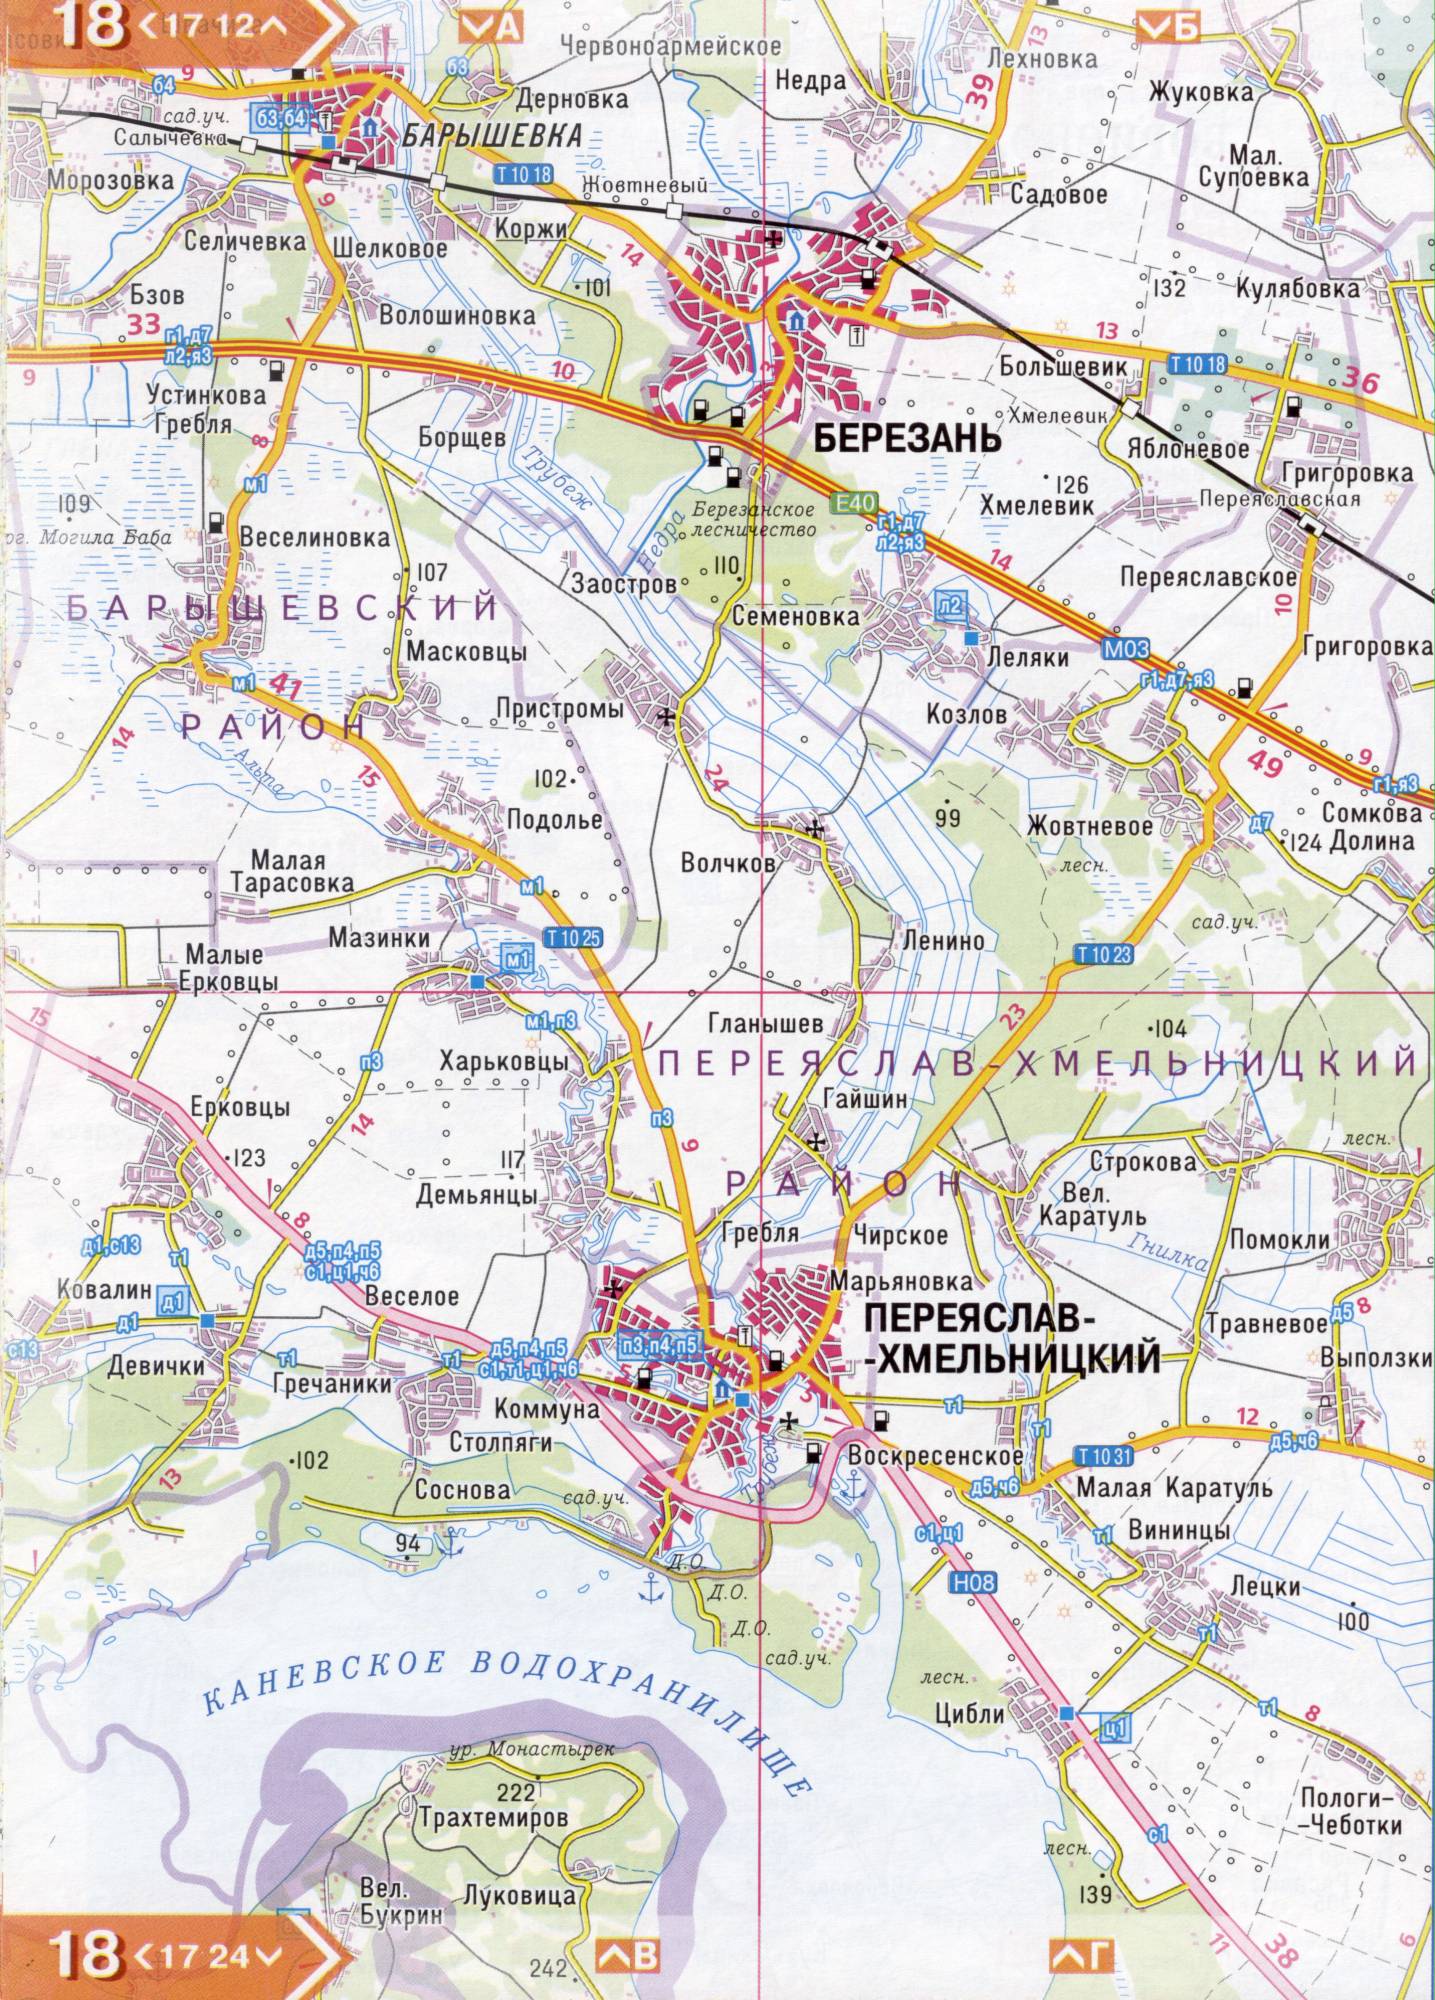 Atlas von der Region Kiew. Eine detaillierte Karte der Region Kiew von dem Atlas von Autobahnen. Kiewer Gebiet auf einer detaillierten Karte Maßstab 1cm = 3km. Frei, E3